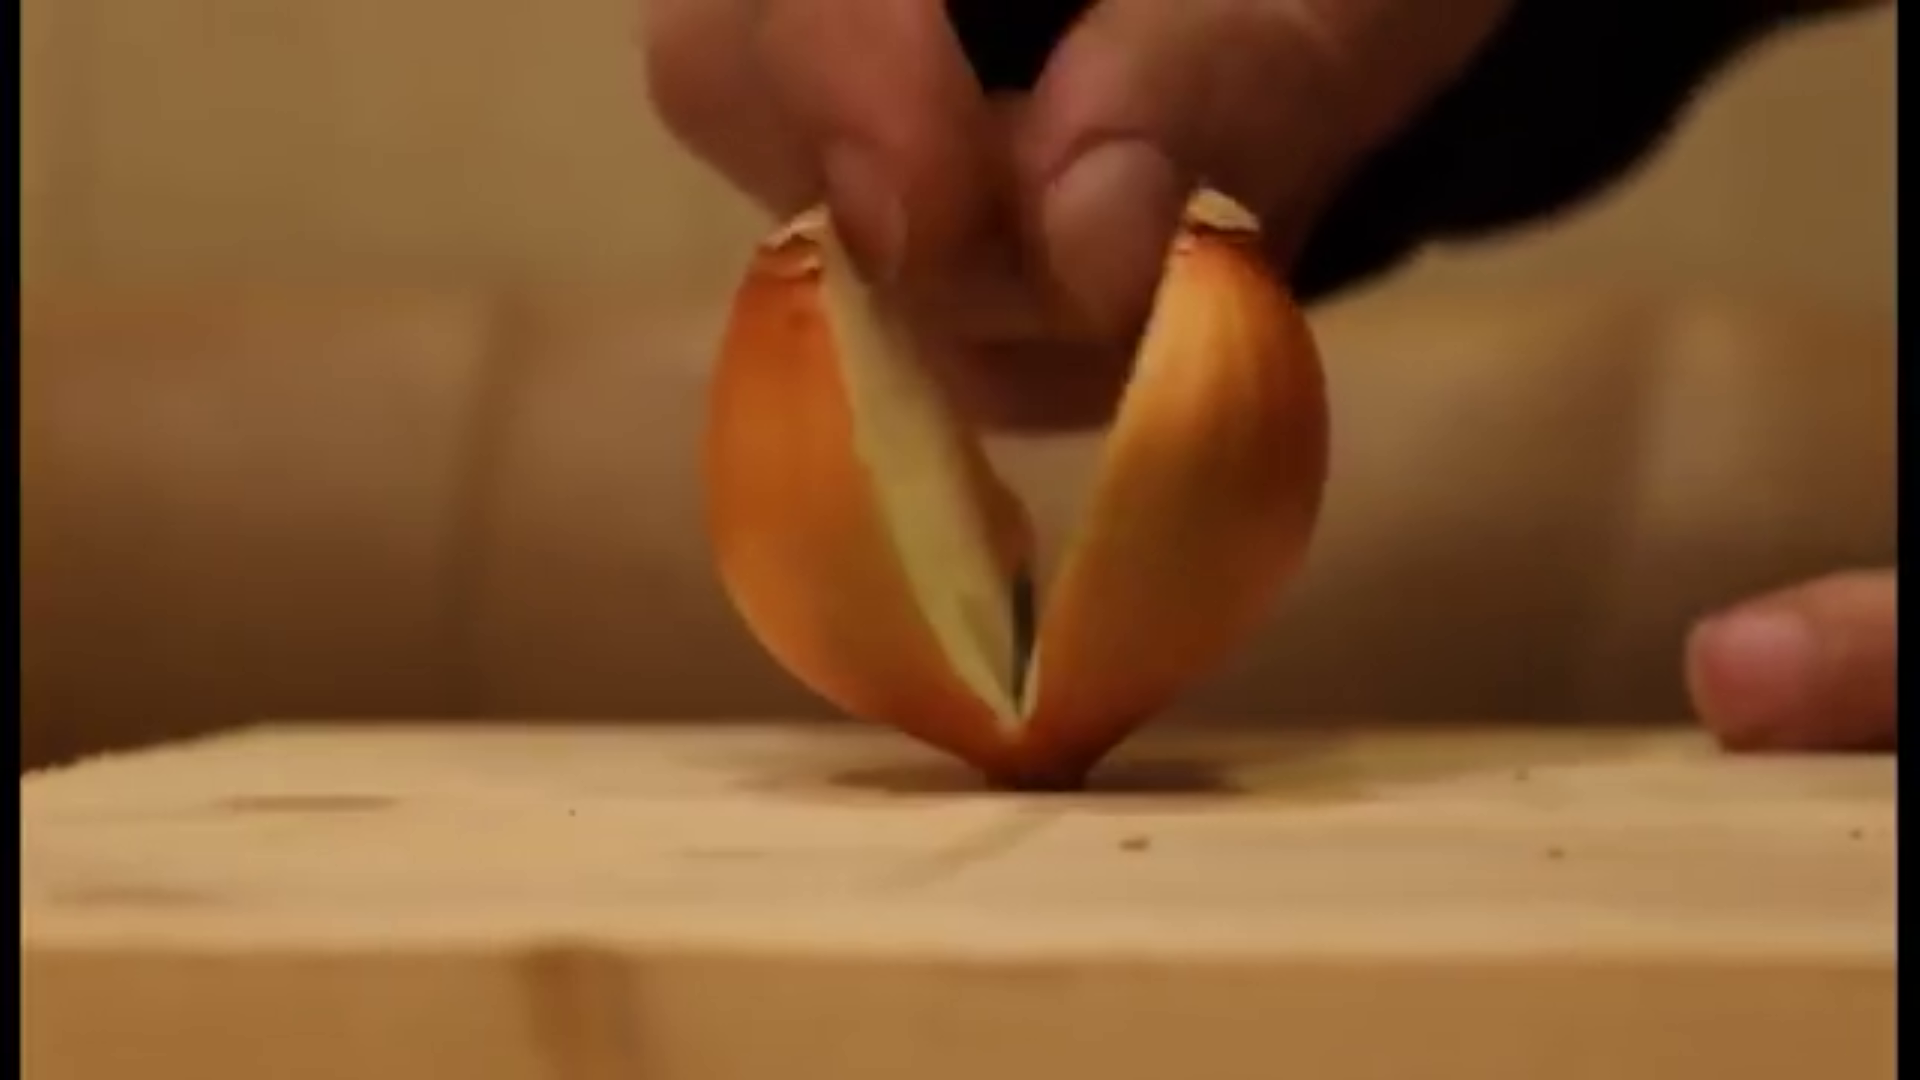 Как разрезать крупную семейную луковицу